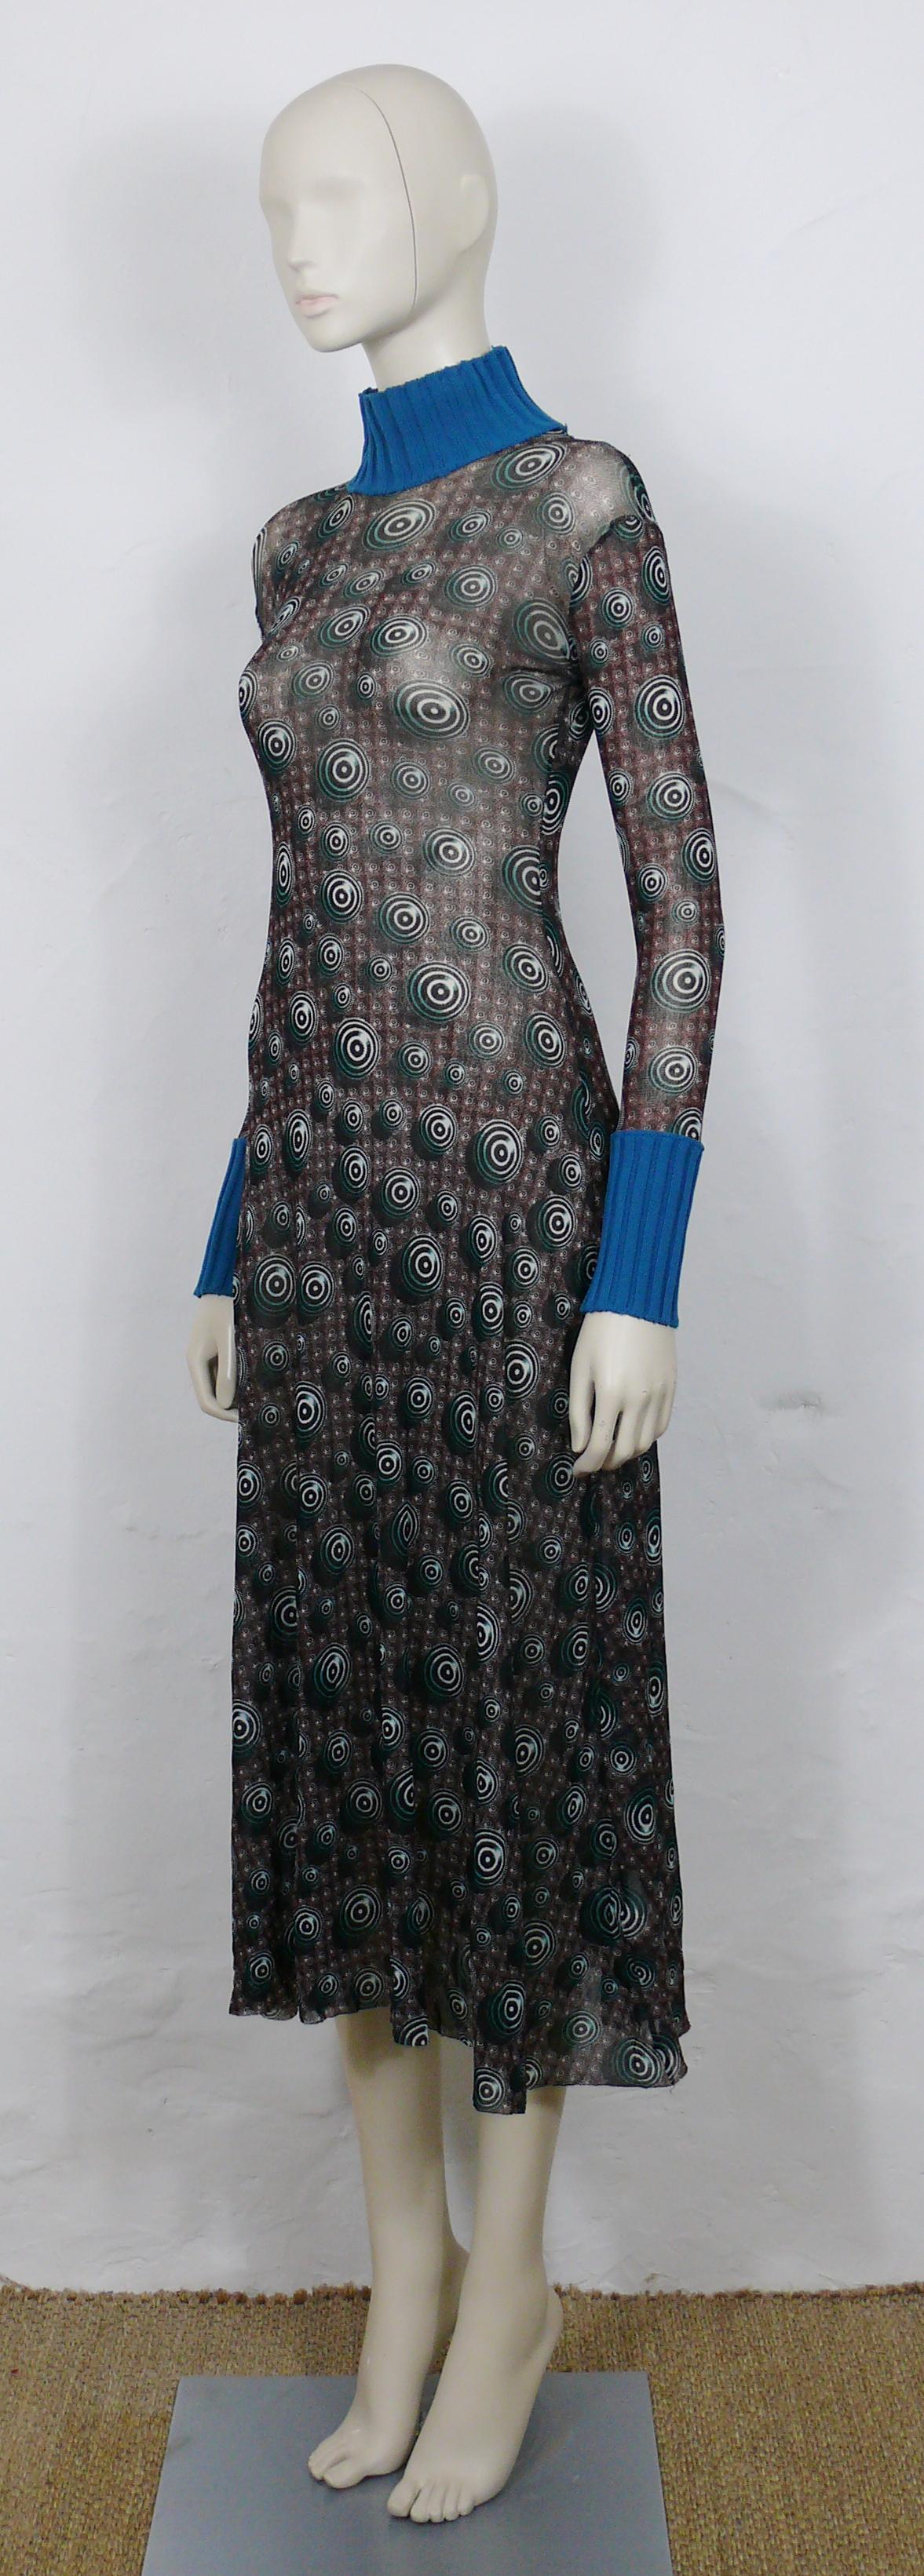 Jean Paul Gaultier Vintage Op Art Sheer Mesh Dress Size M For Sale 1